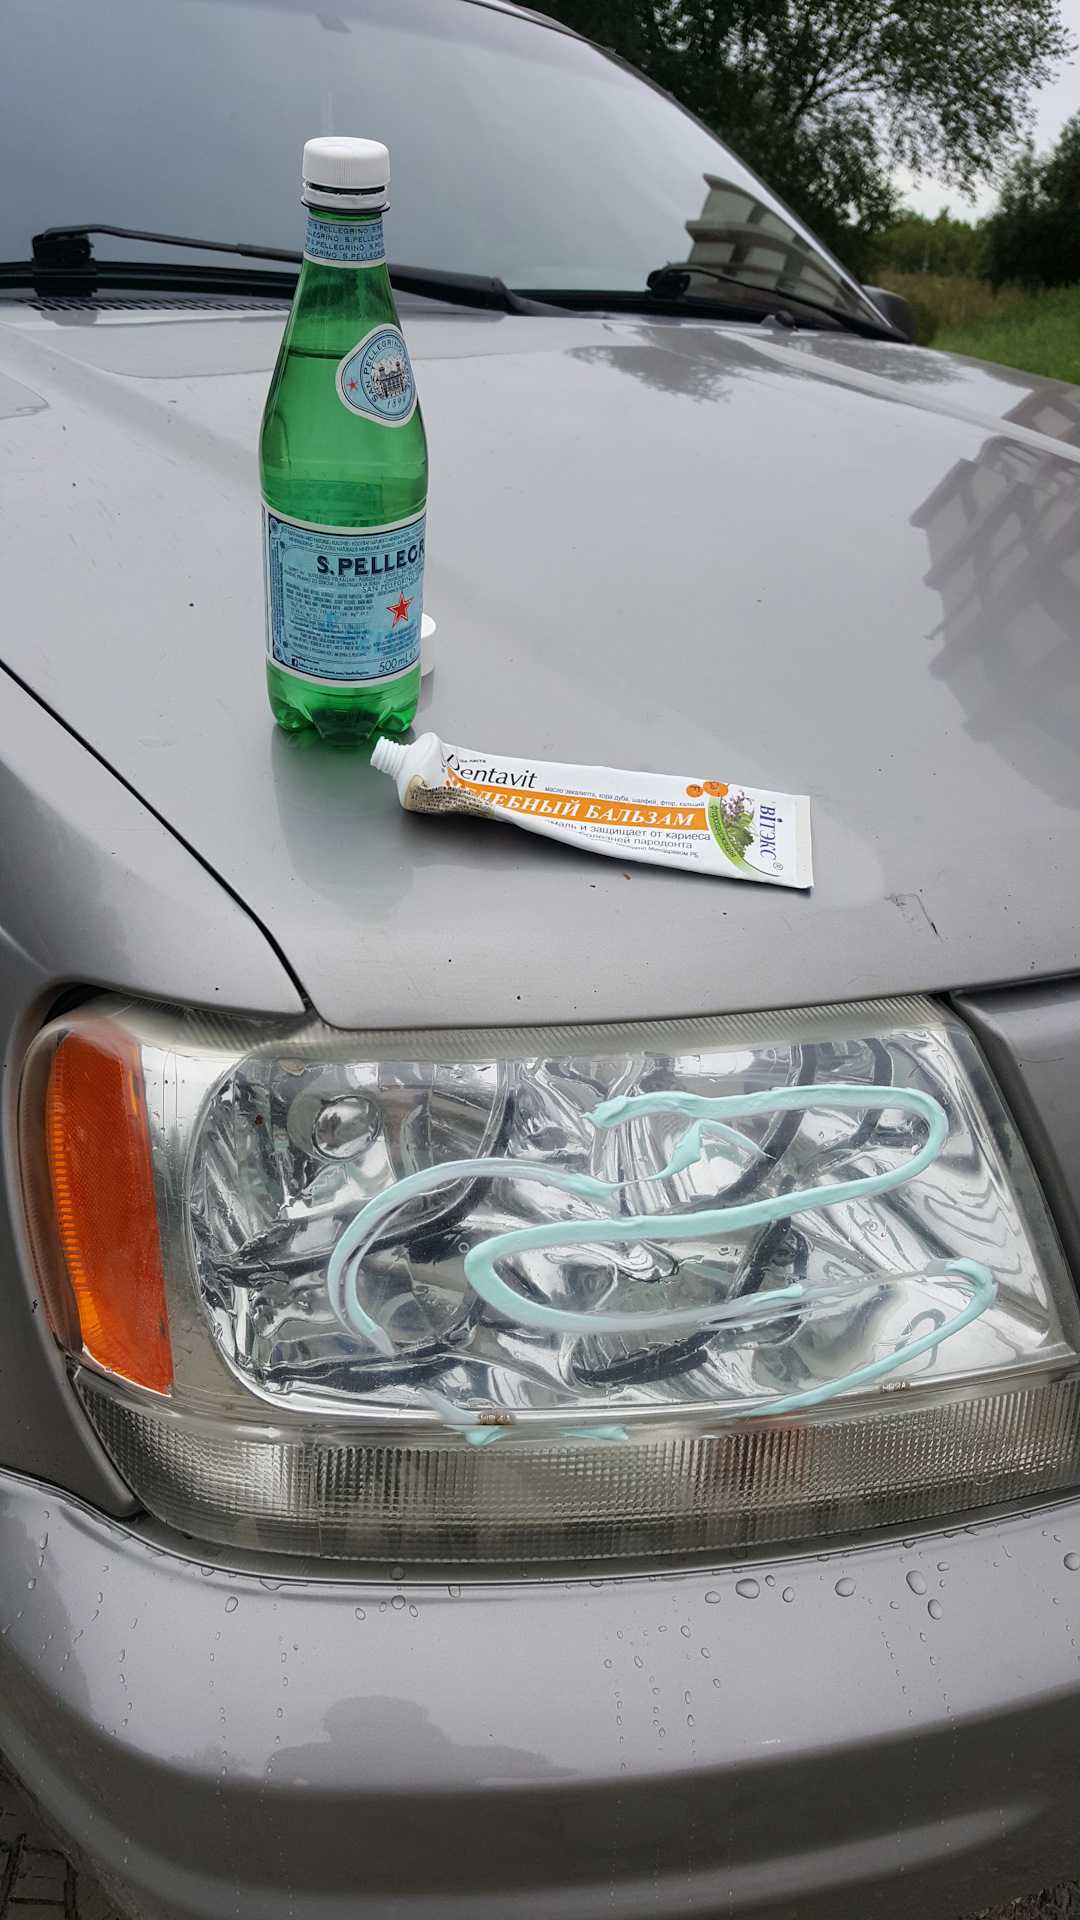 Бесплатный способ очищения фар автомобиля: используем зубную пасту! полировка фар зубной пастой своими руками можно ли зубной пастой отполировать фары автомобиля